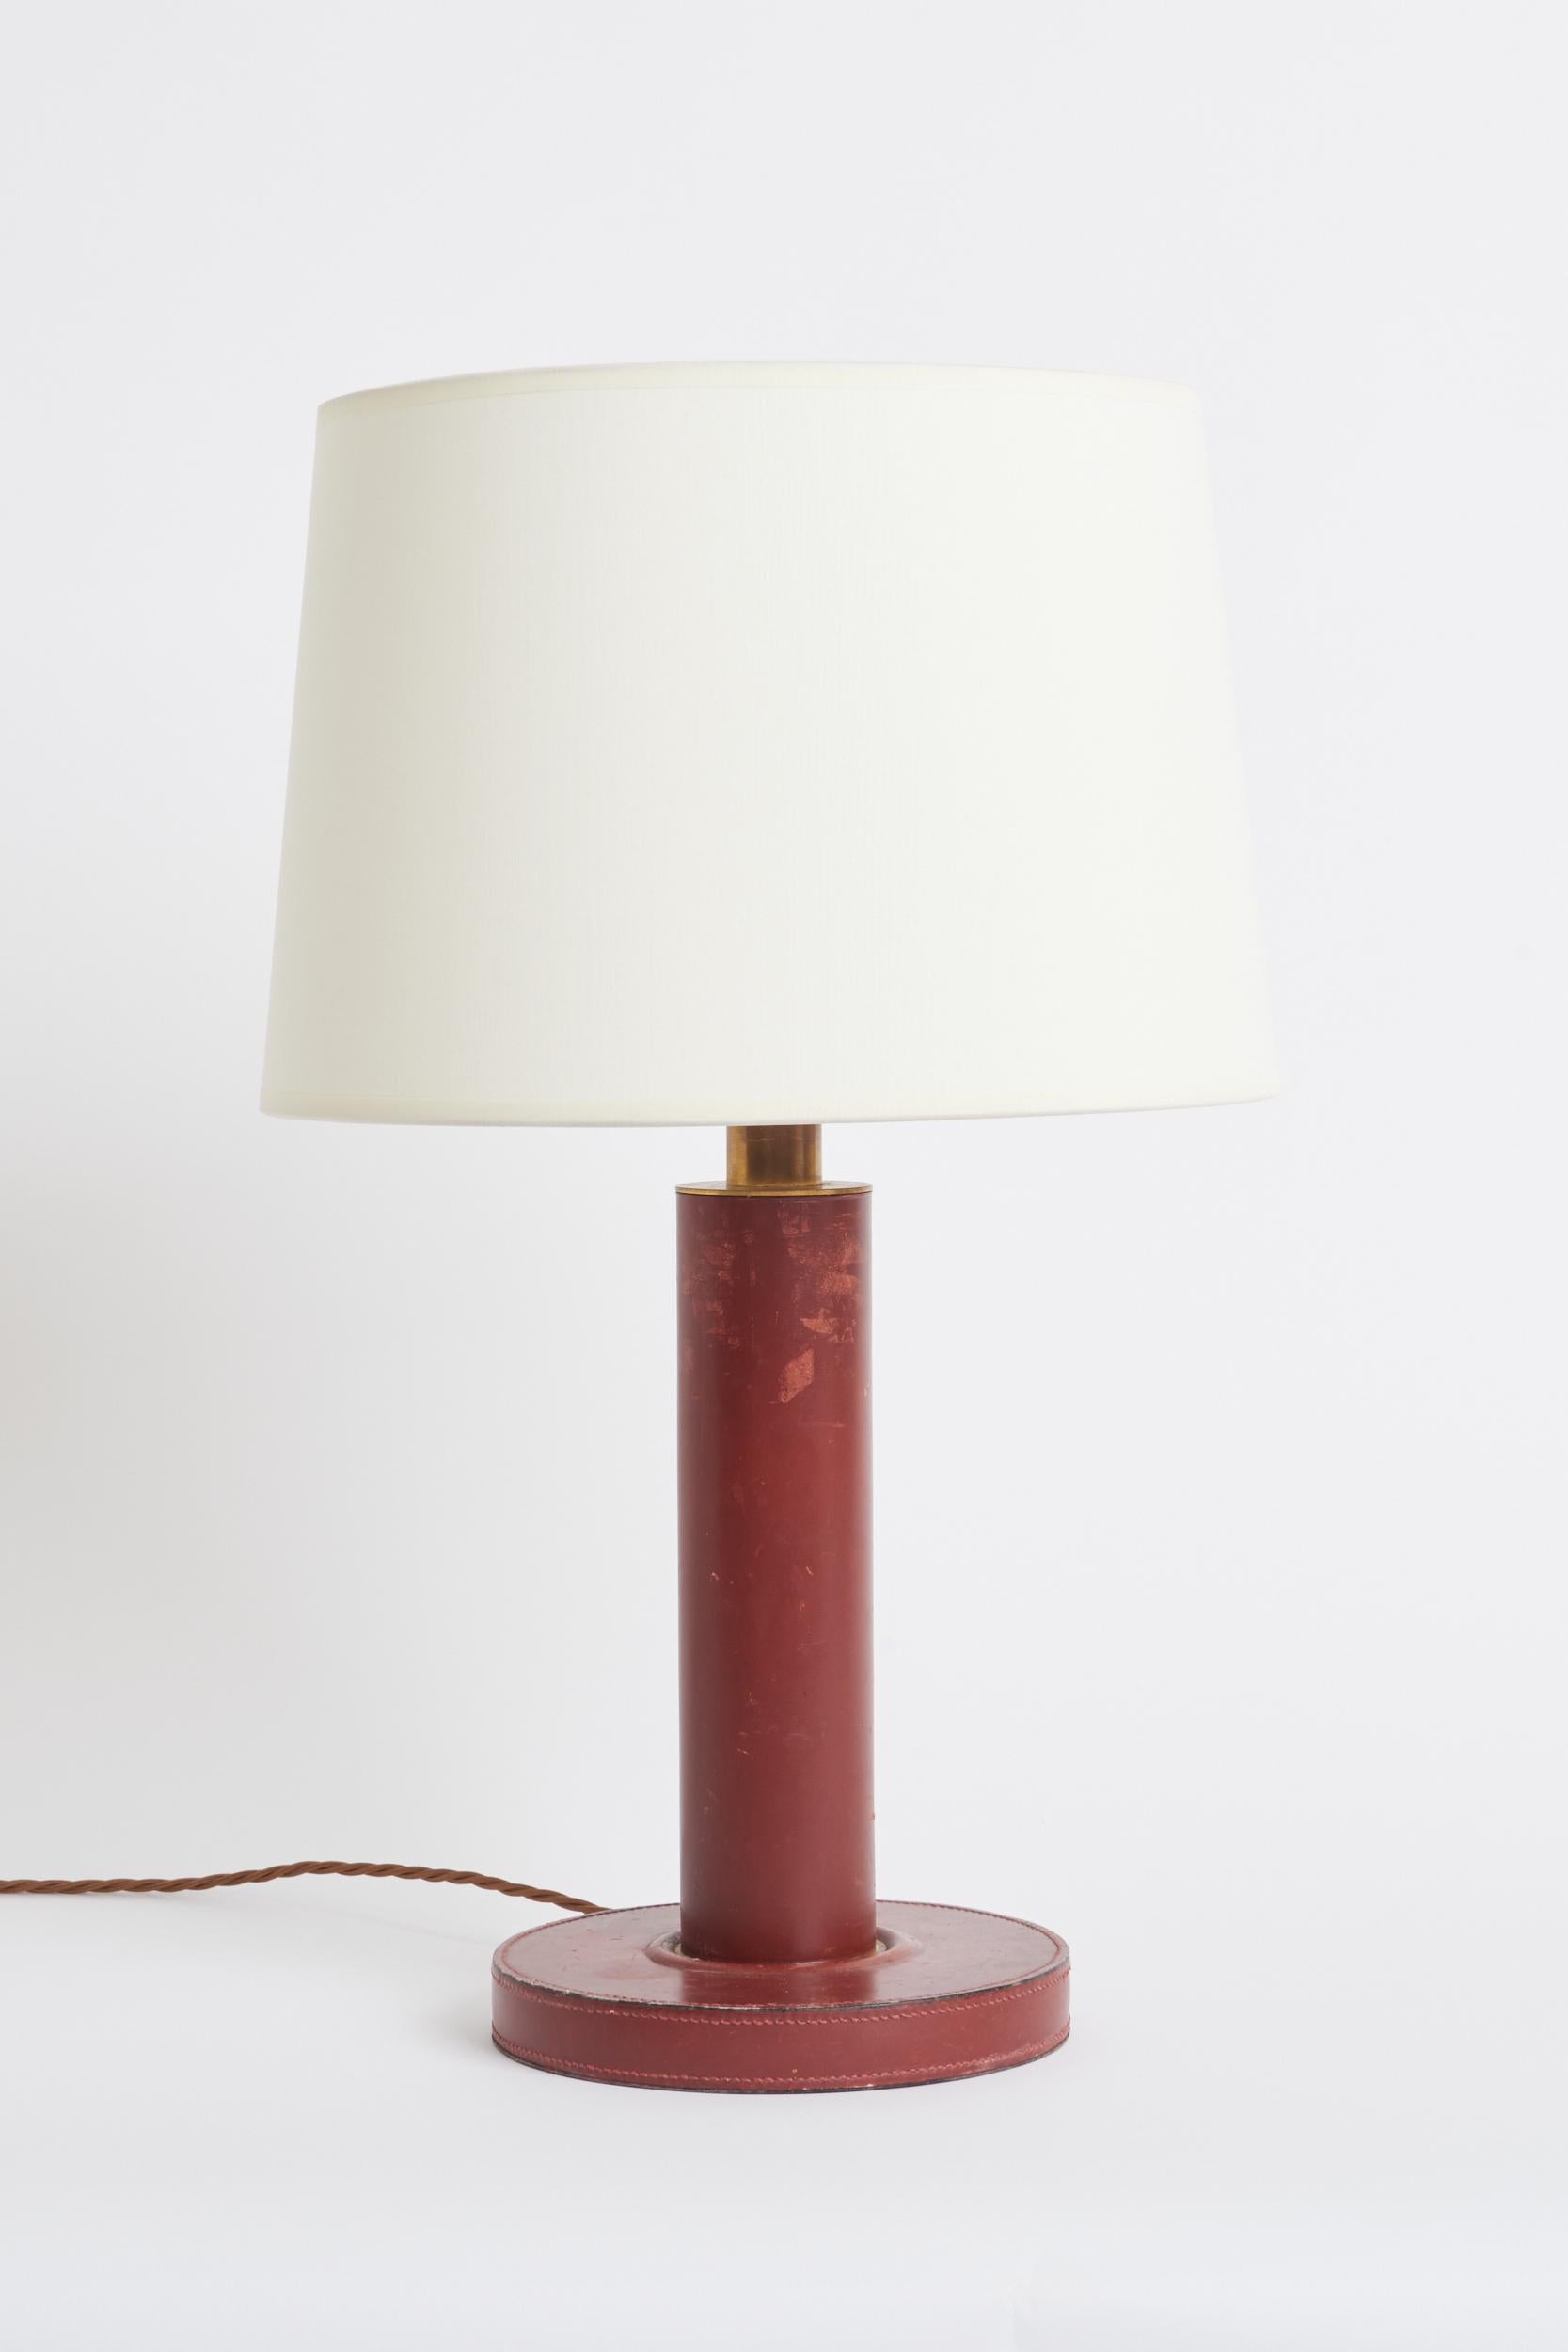 Lampe de table en cuir rouge, à la manière de Paul Dupre Lafon.
France, années 1930.
Avec l'abat-jour : 57,5 cm de haut par 35,5 cm de diamètre
Base de la lampe uniquement : 39 cm de haut par 20 cm de diamètre.